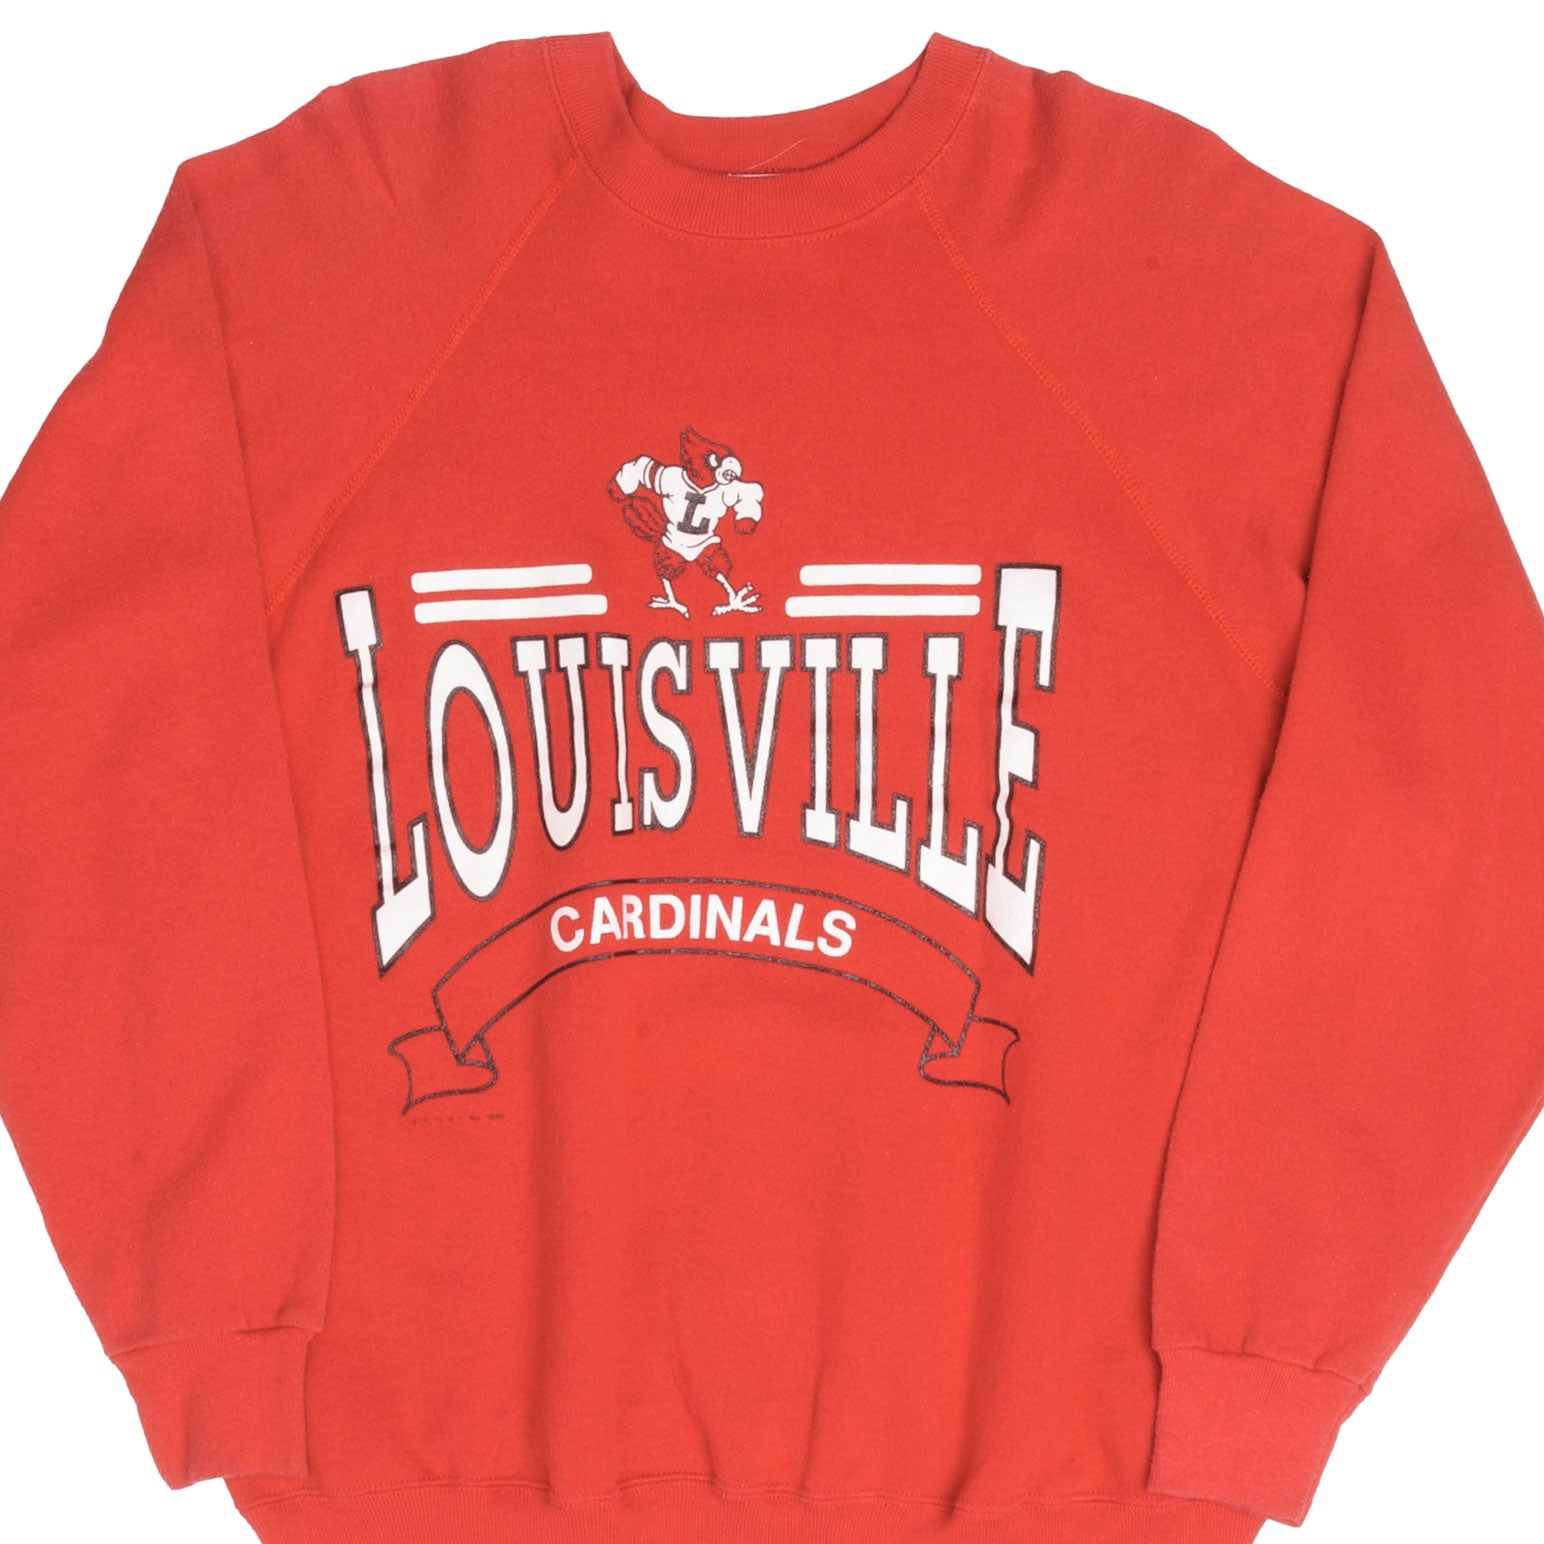 Champion Men's Louisville Cardinals Reverse Weave Crew Sweatshirt